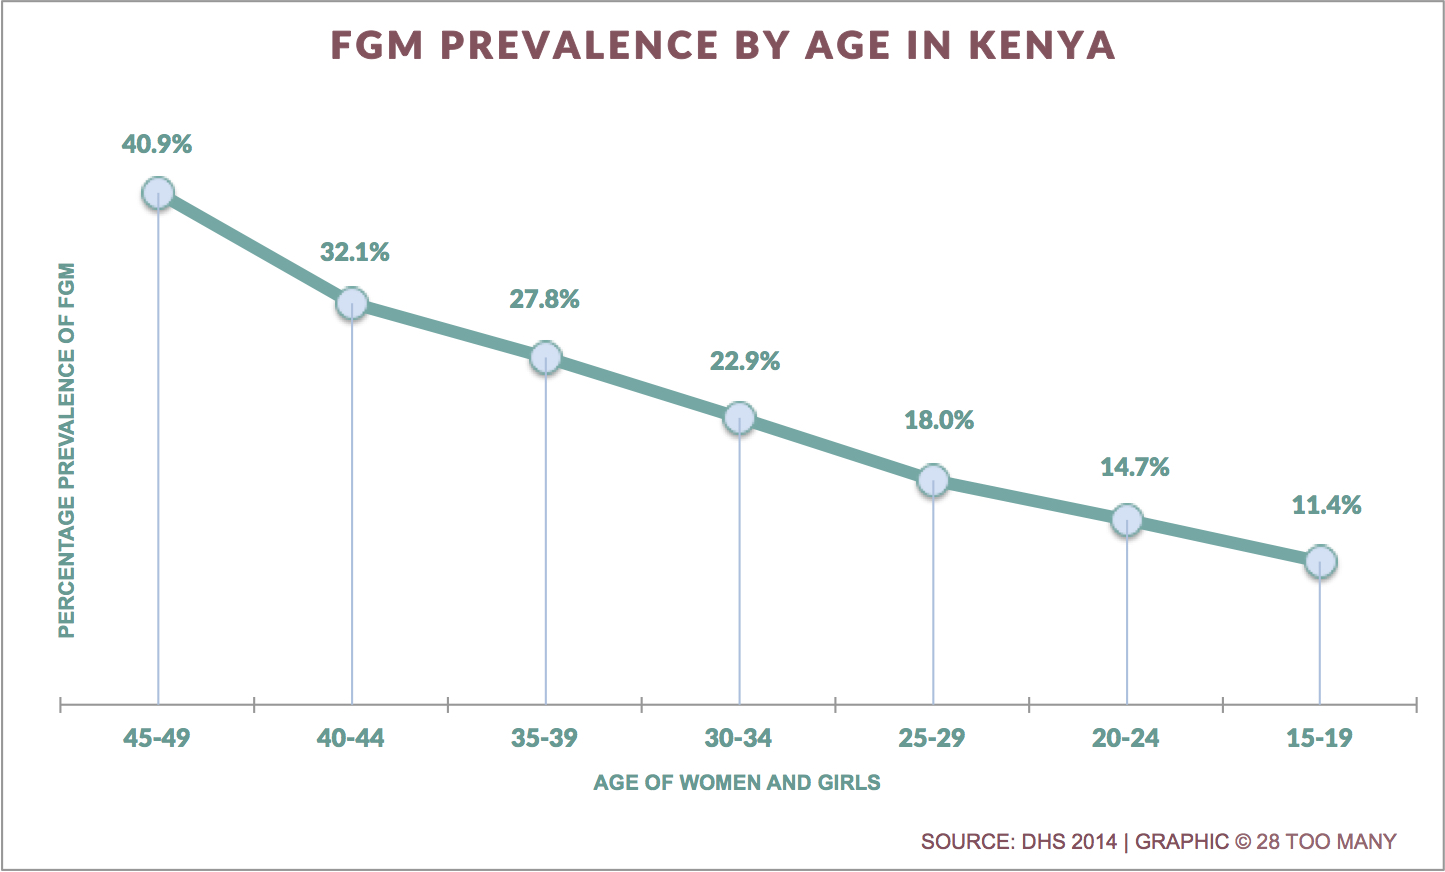 Trends in FGM Prevalence in Kenya